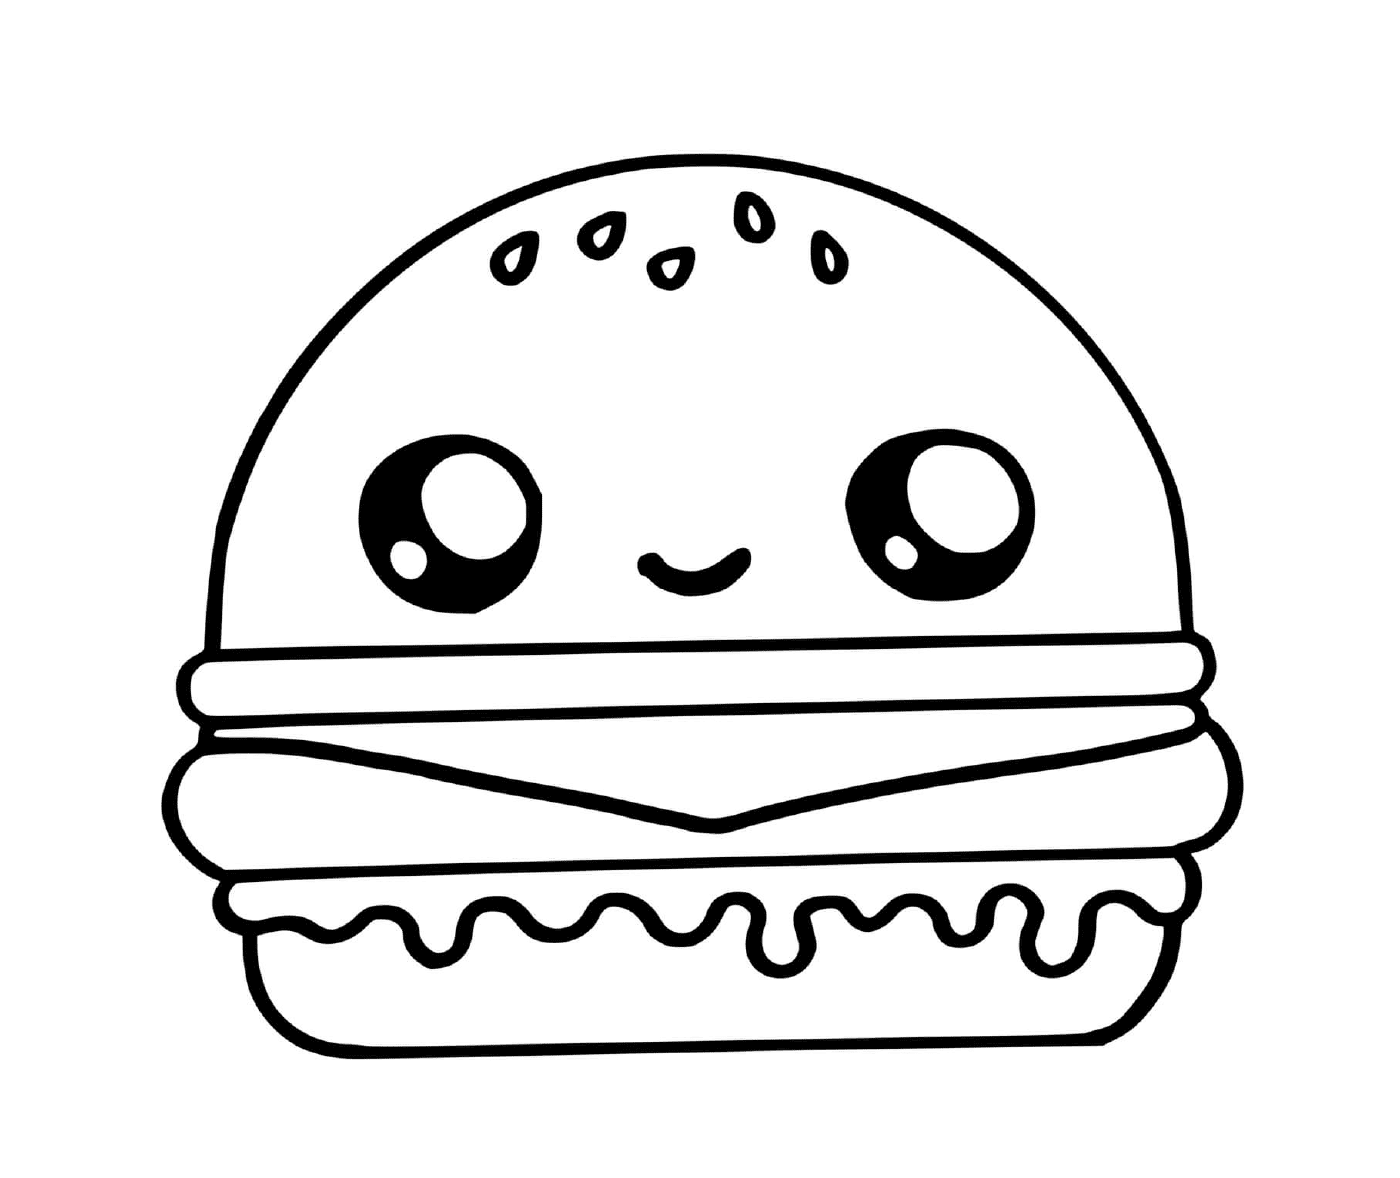  Una linda hamburguesa 